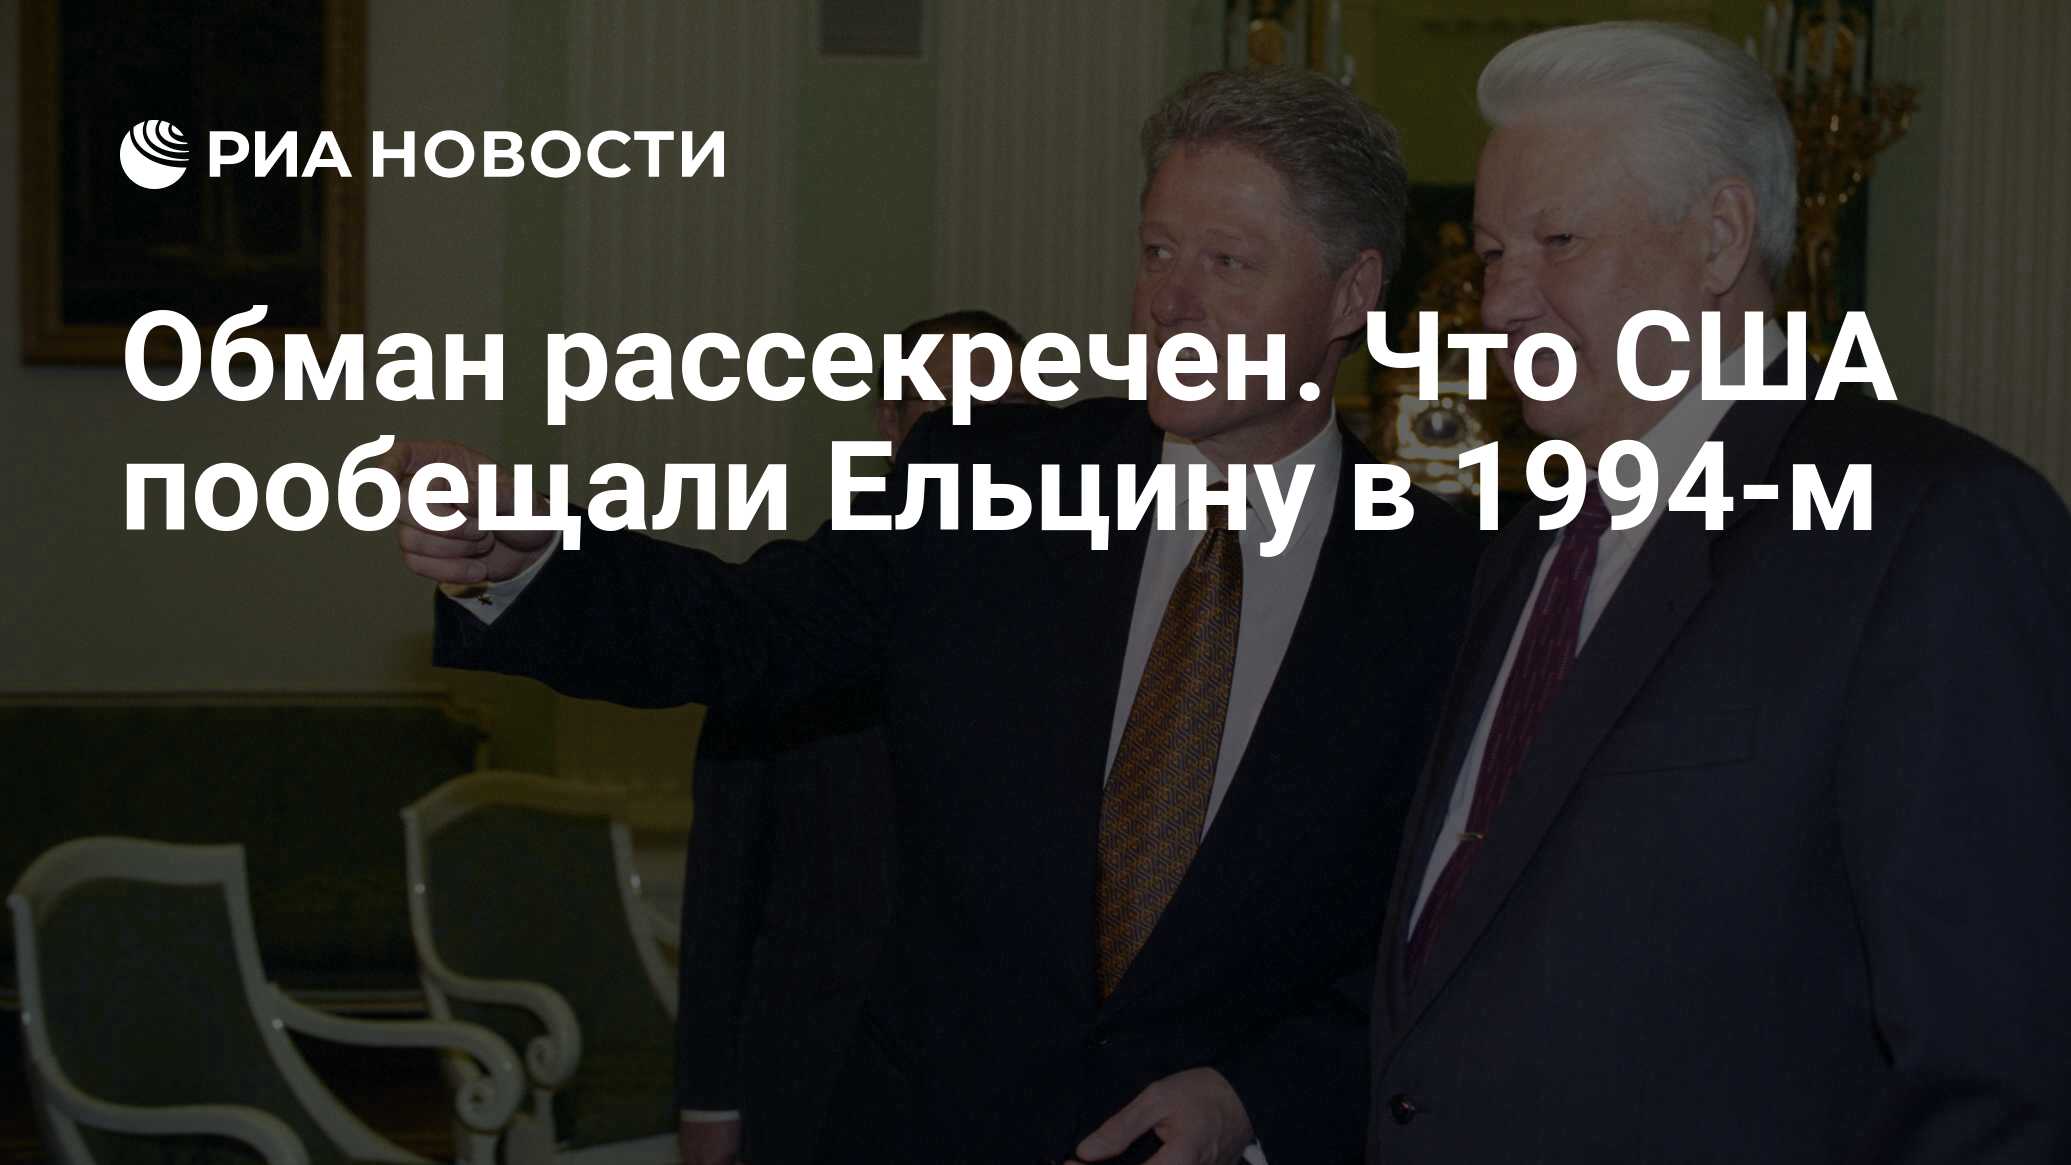 Обман рассекречен. Что США пообещали Ельцину в 1994-м